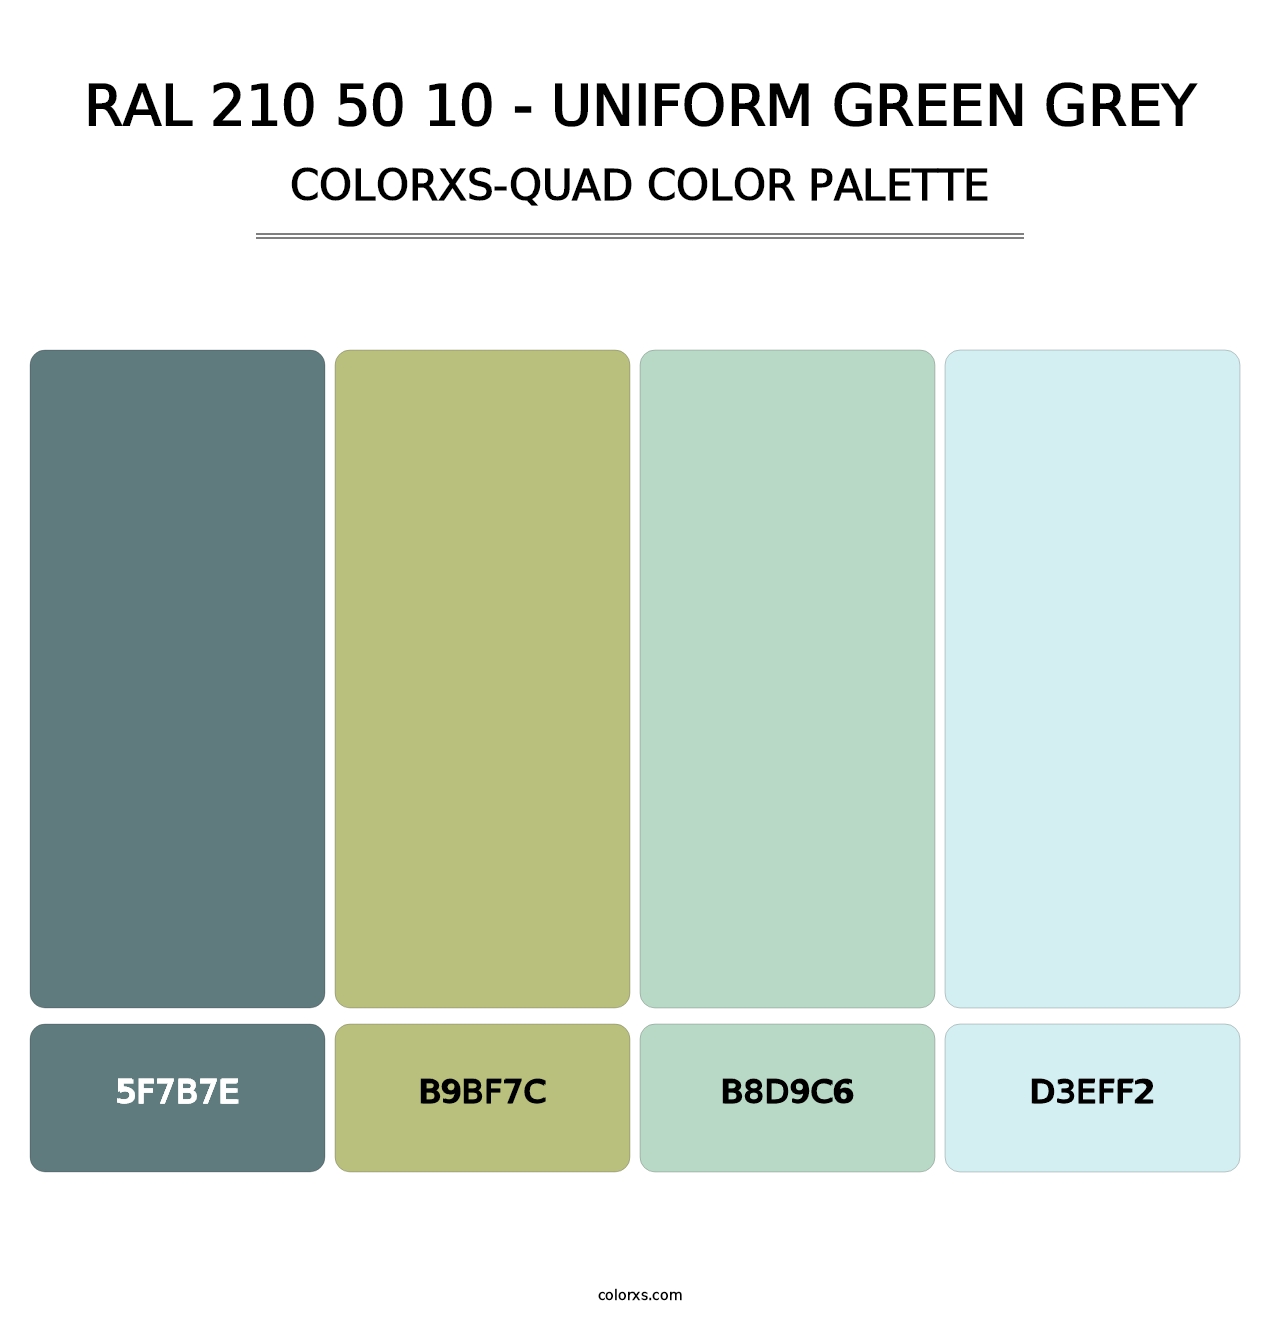 RAL 210 50 10 - Uniform Green Grey - Colorxs Quad Palette